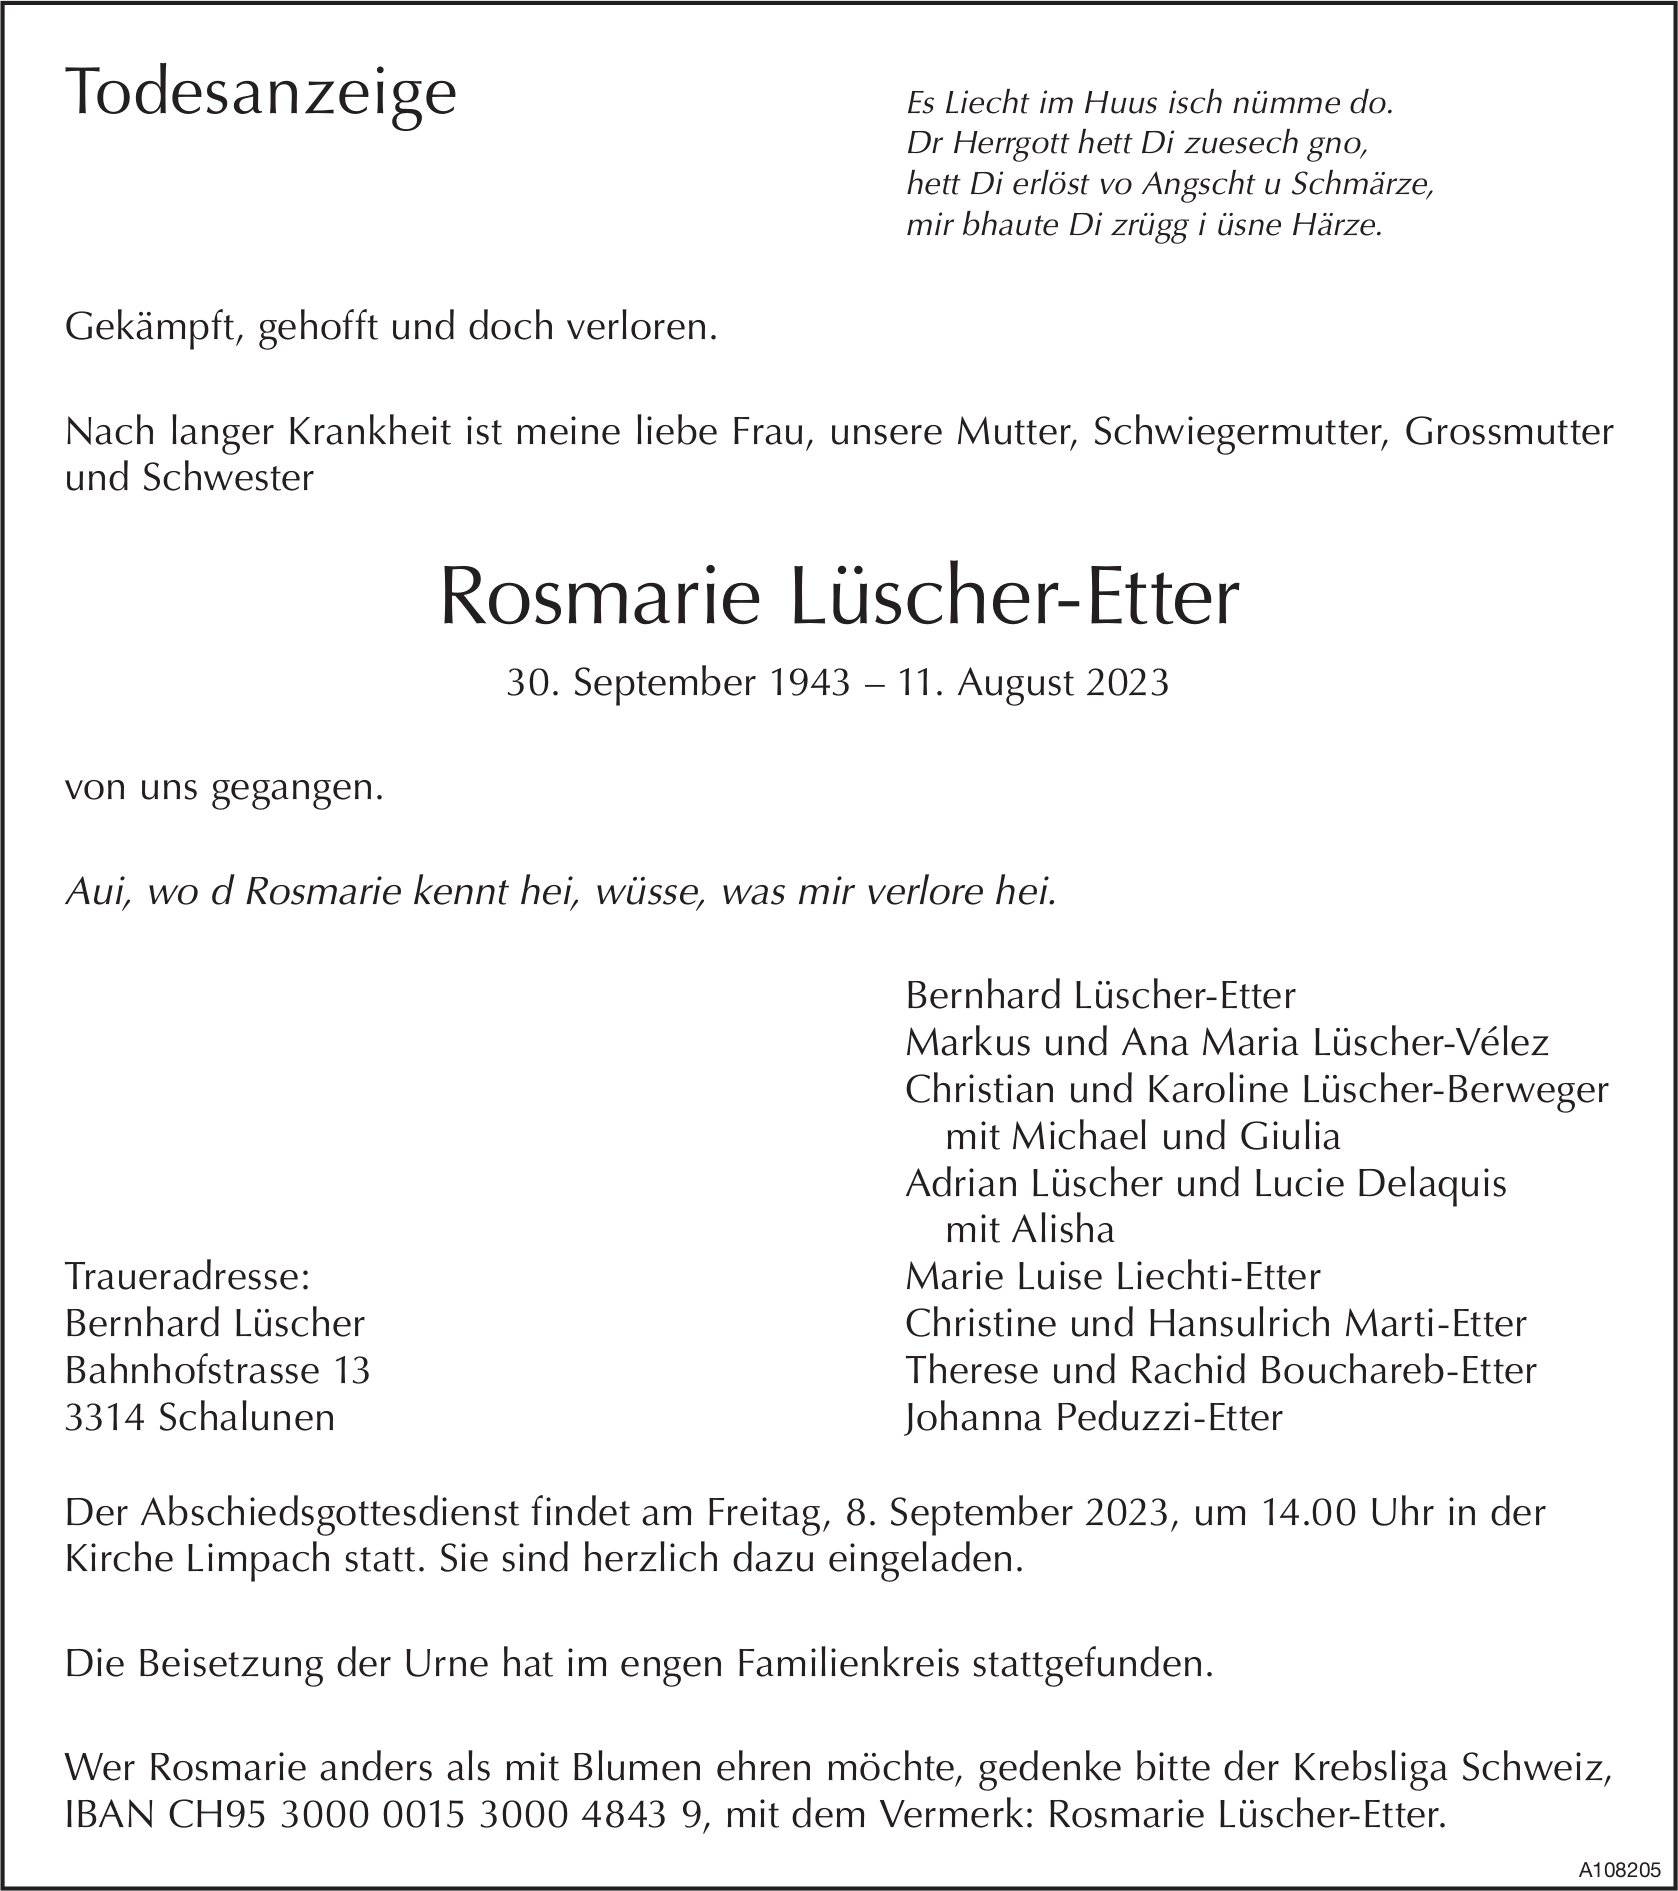 Rosmarie Lüscher-Etter, August 2023 / TA